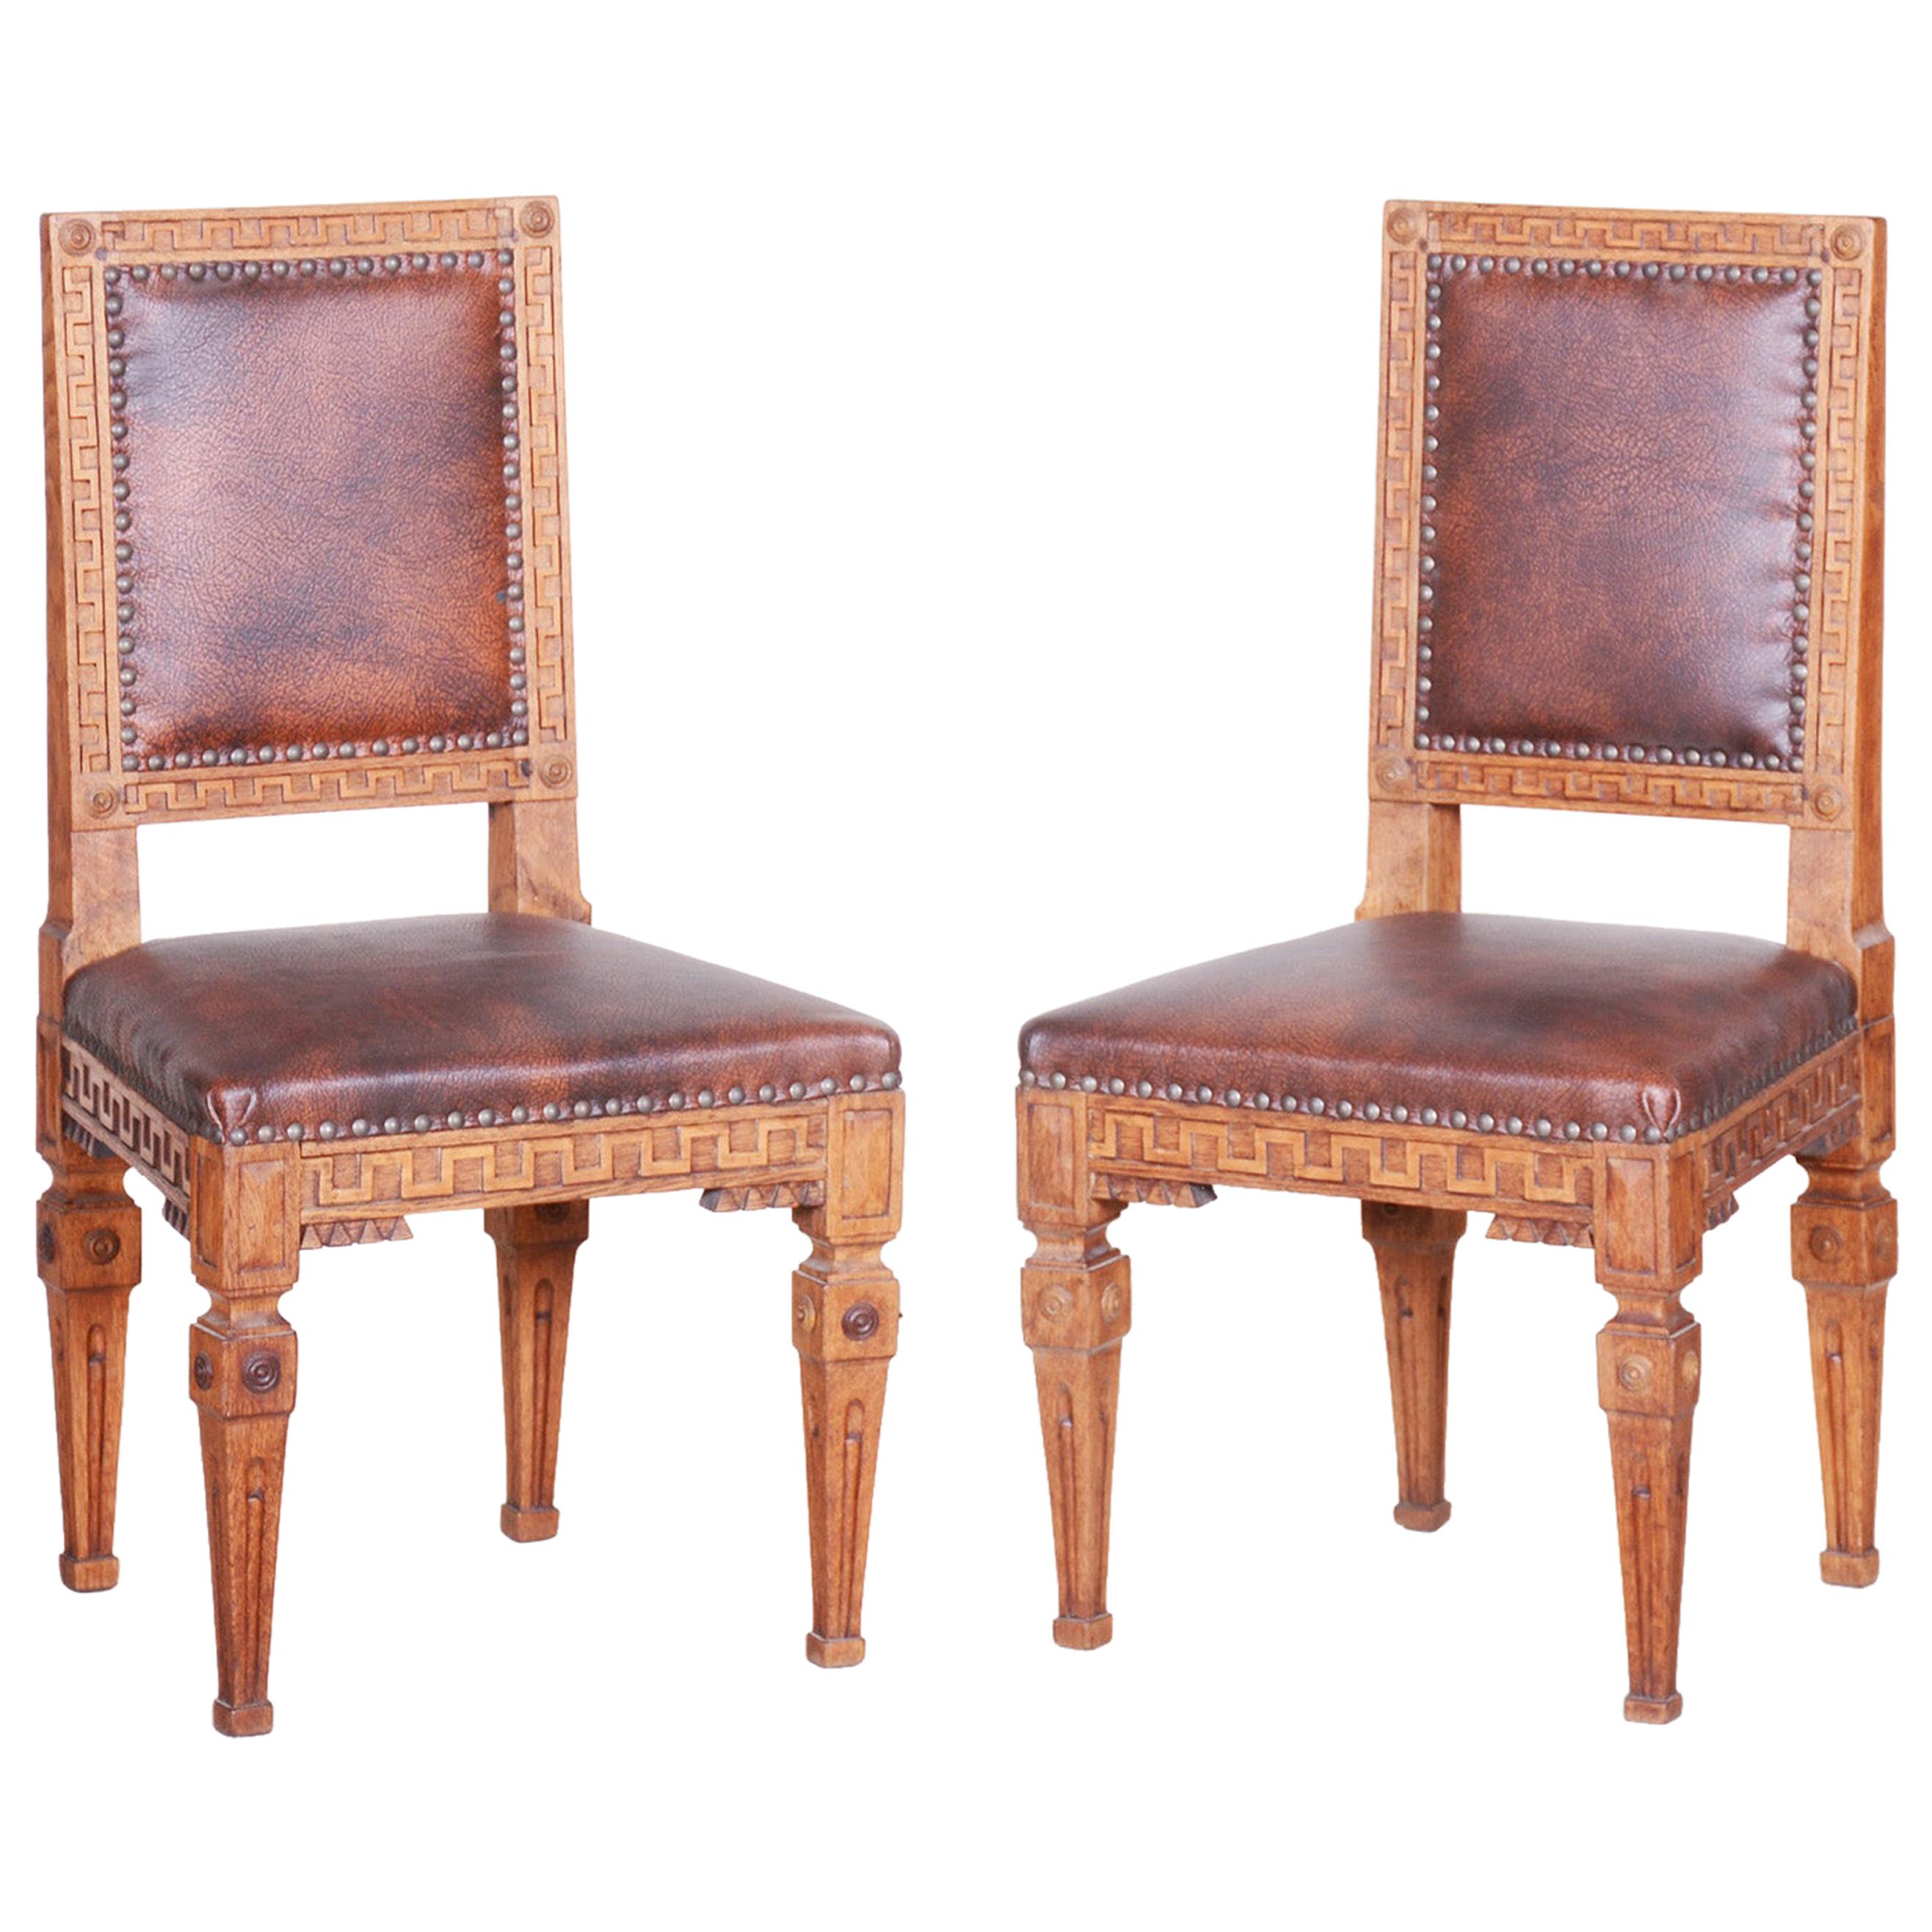 Pair of Early 19th Century Czech Biedermeier Oak Chairs, Czechia, 1800s